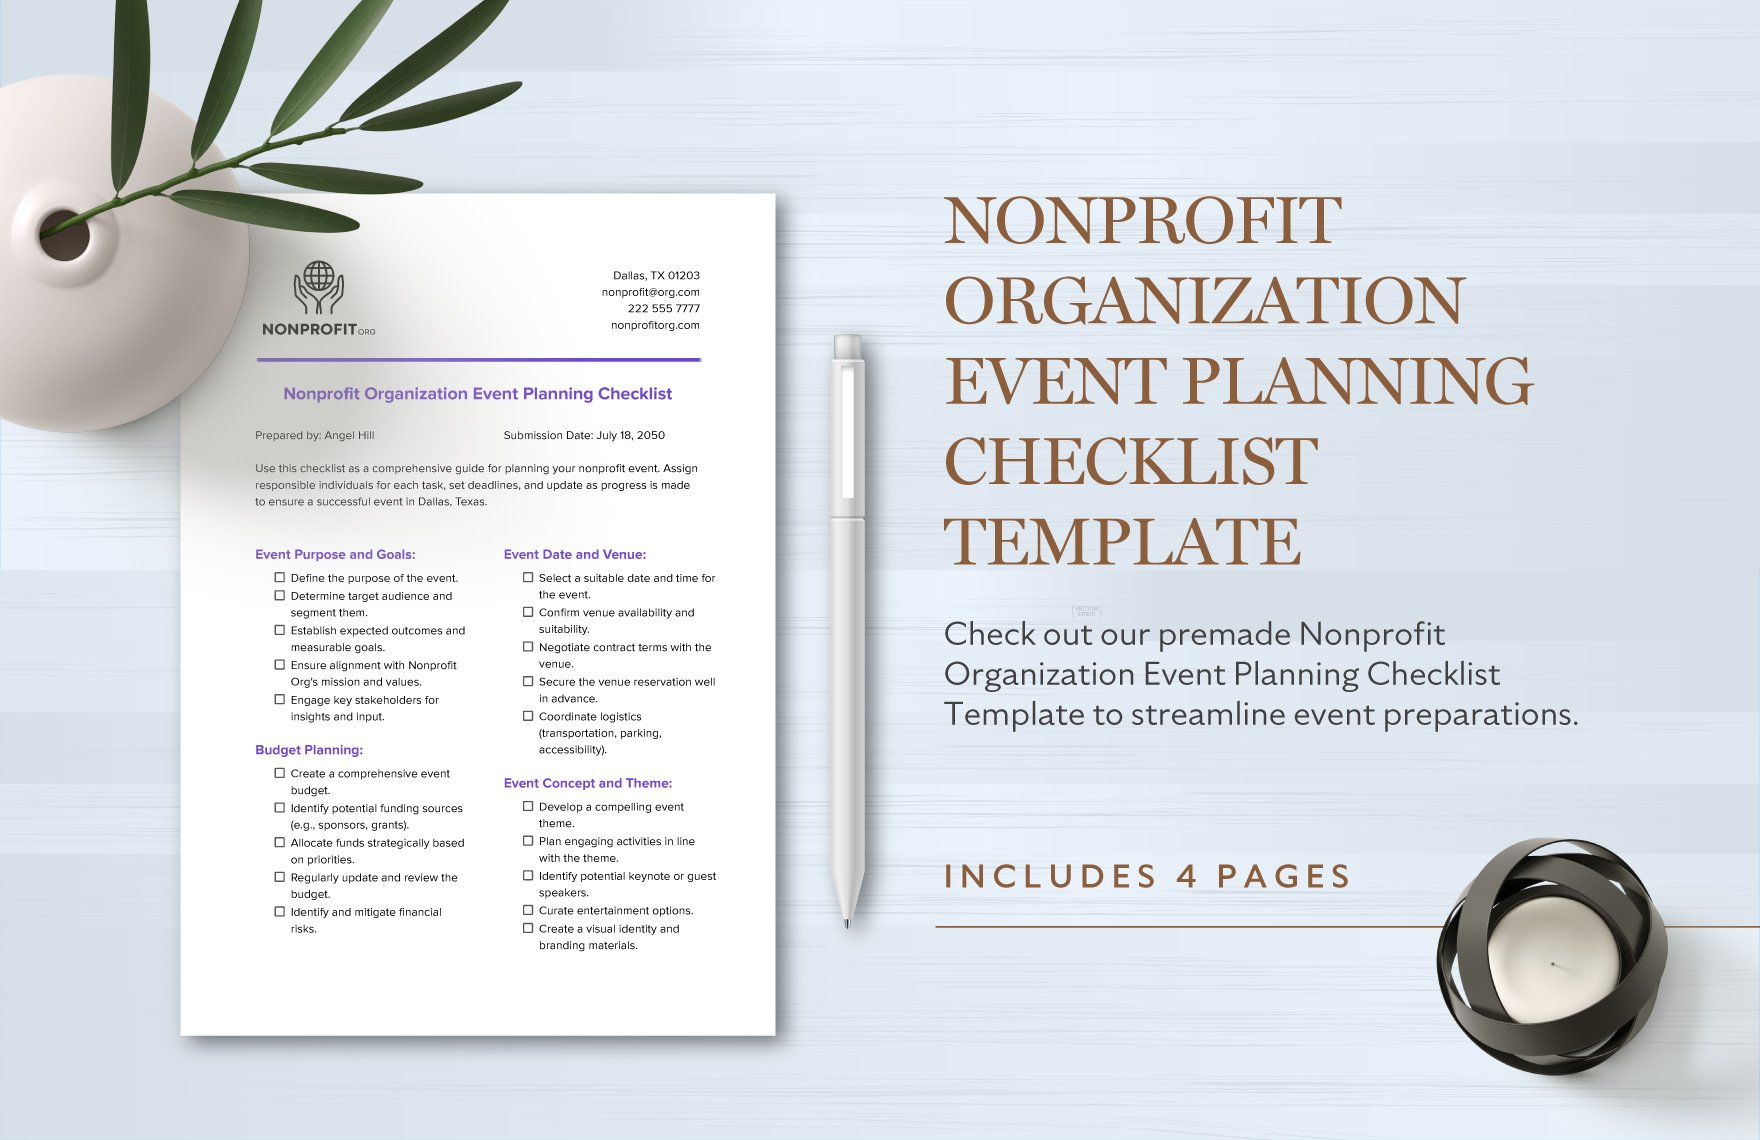 Nonprofit Organization Event Planning Checklist Template